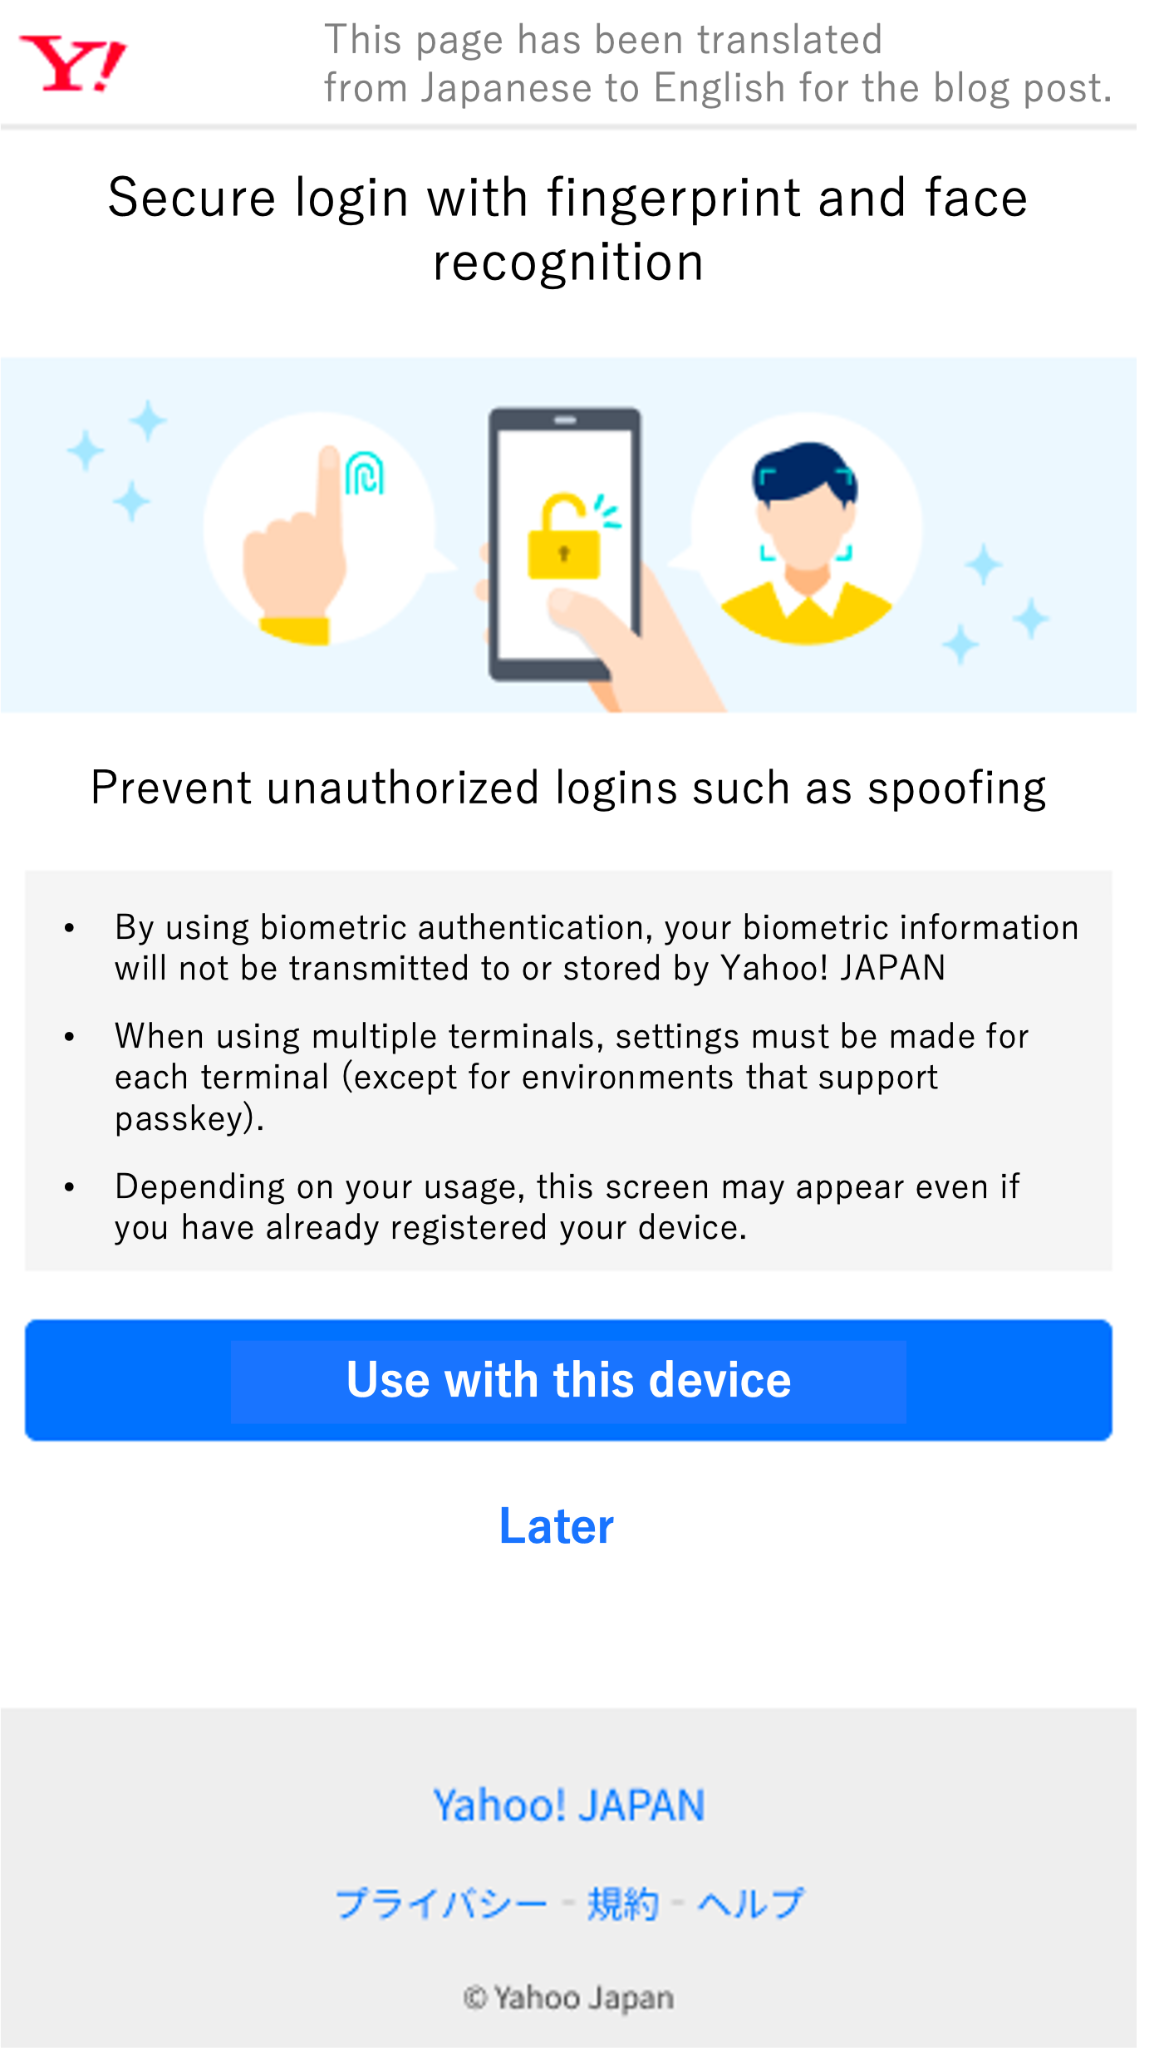 الترجمة الإنجليزية لملف Yahoo! صفحة تسجيل مفاتيح المرور اليابانية على نظام التشغيل iOS (مجموعة التحكّم).